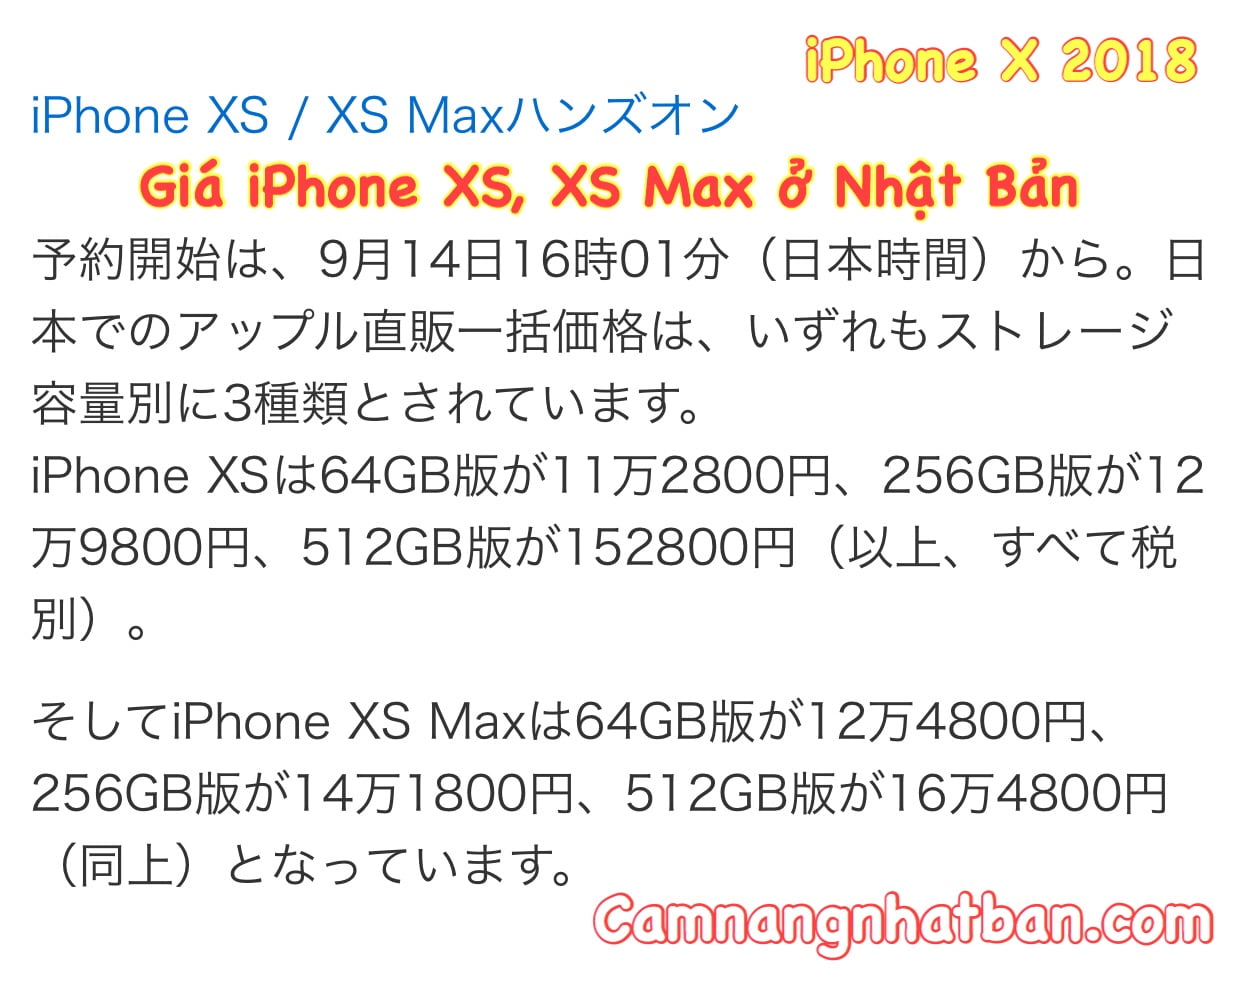 Mua iphone quốc tế Nhật - Danh sách các cửa hàng Apple tại Nhật Bản -  Japan.net.vn